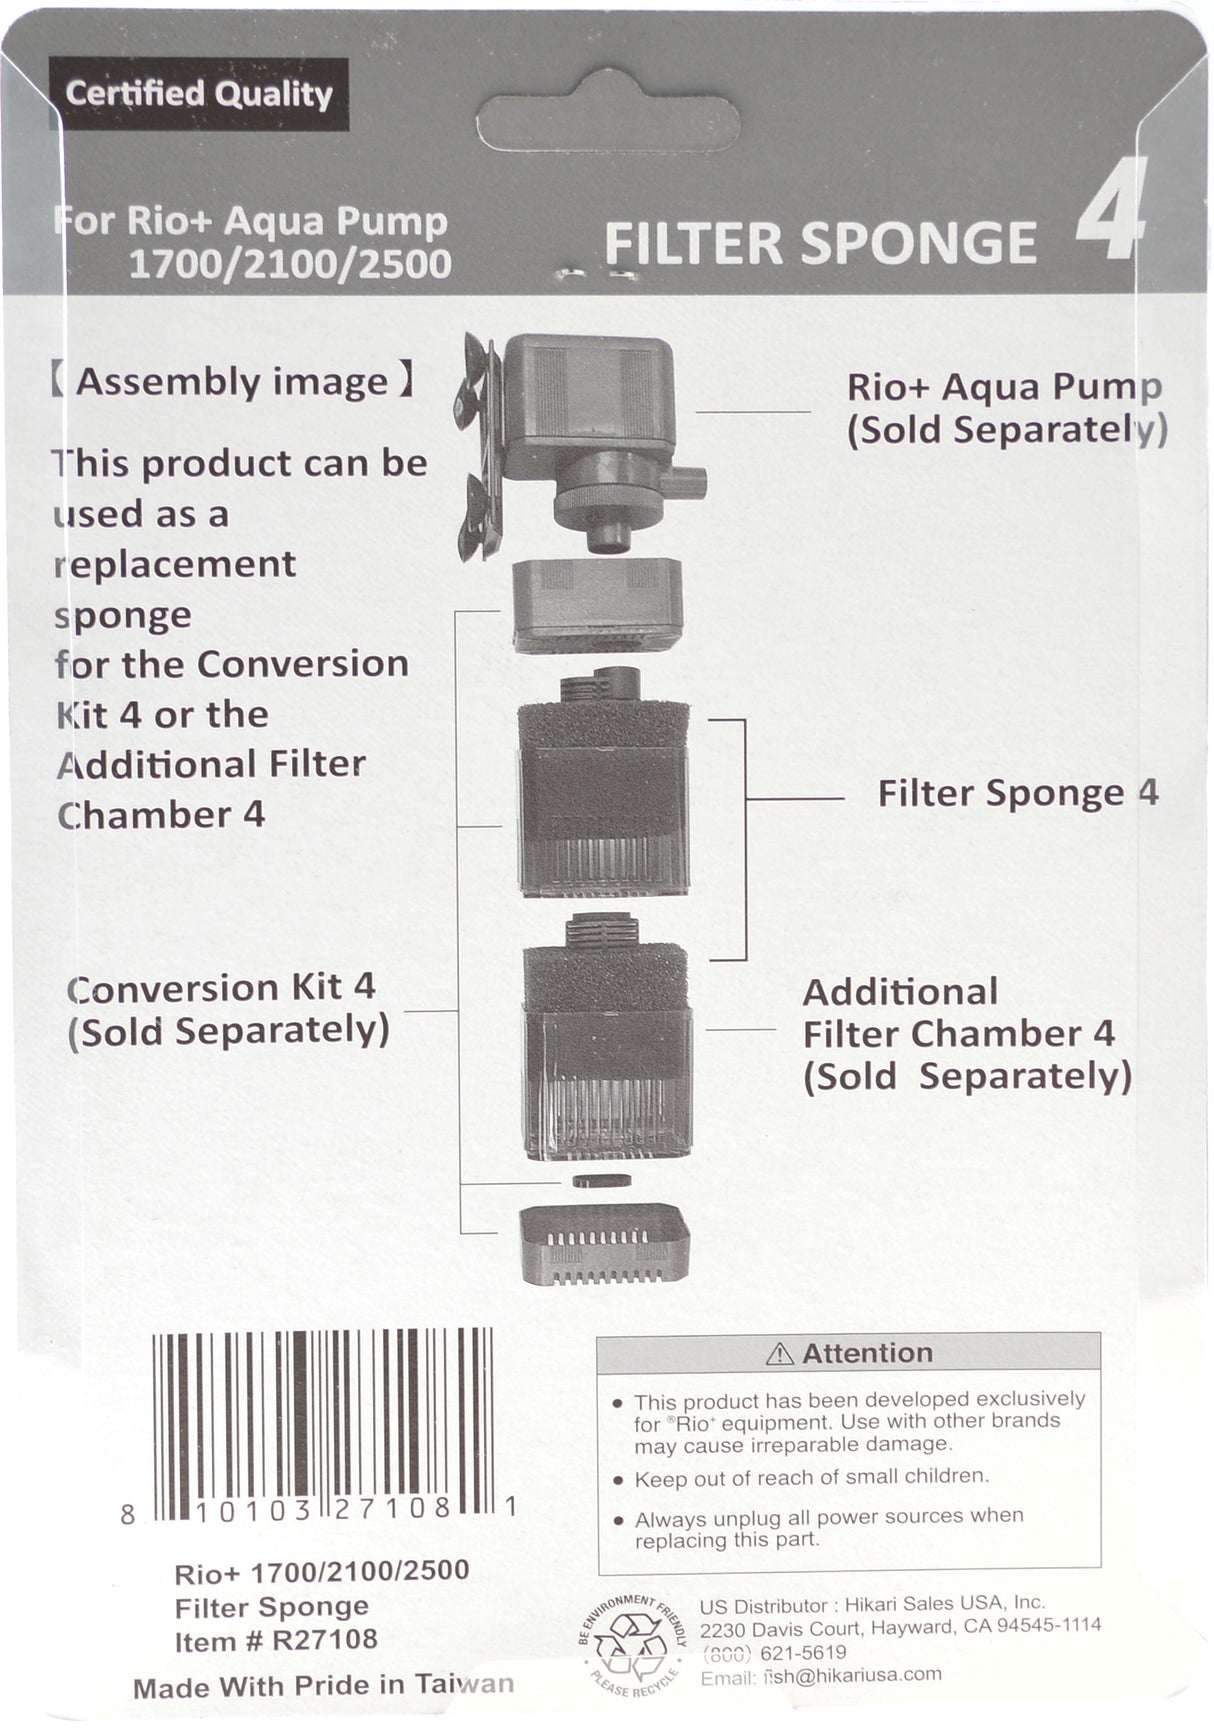 Model 1700-2100 - 6 count Rio Plus Aqua Pump Replacement Filter Sponge